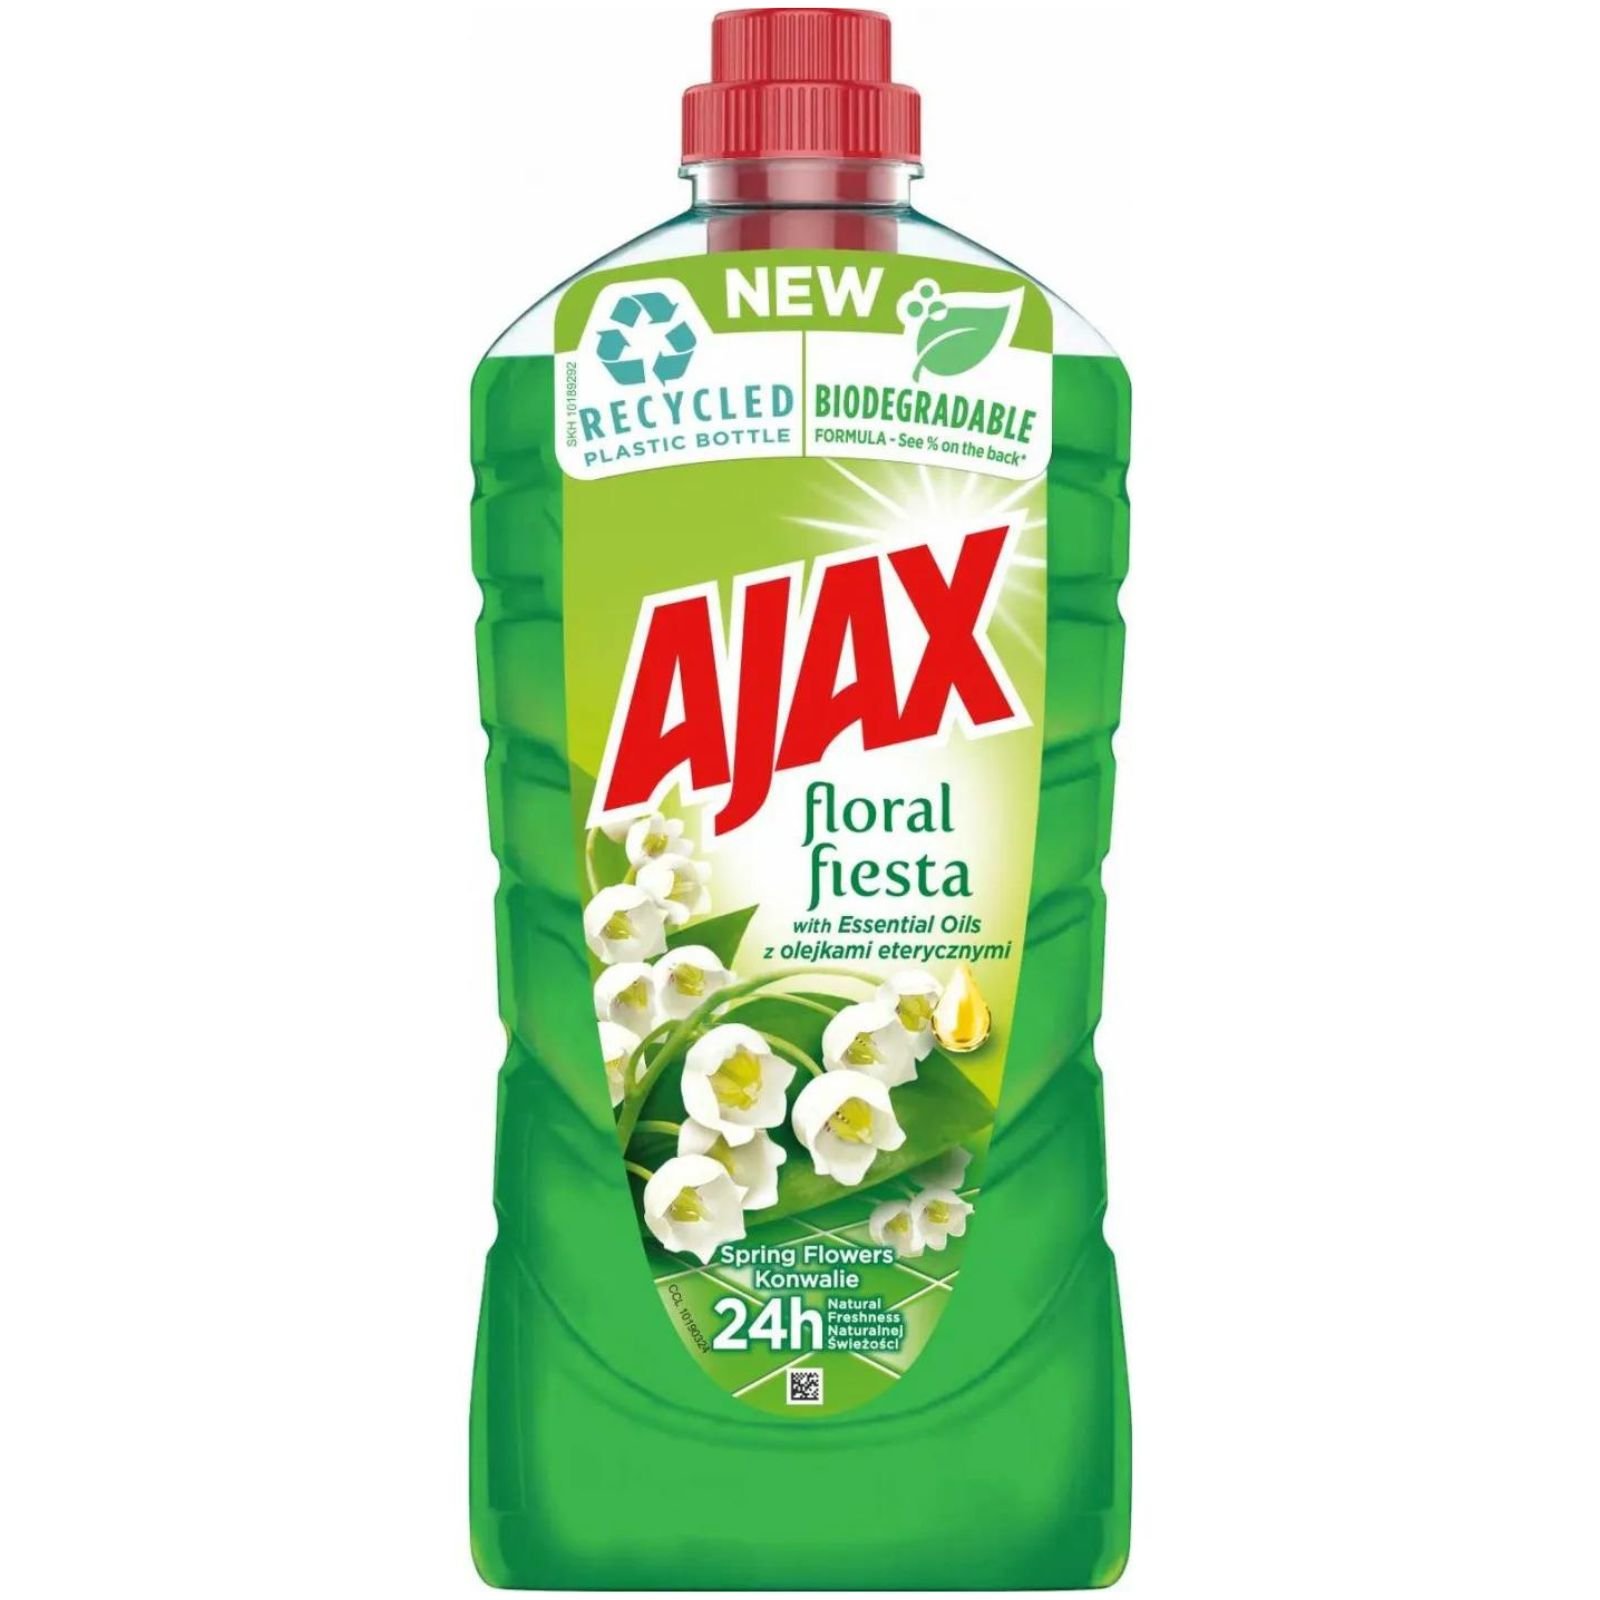 Ajax Floral Fiesta Konwalia Płyn Uniwersalny 1l